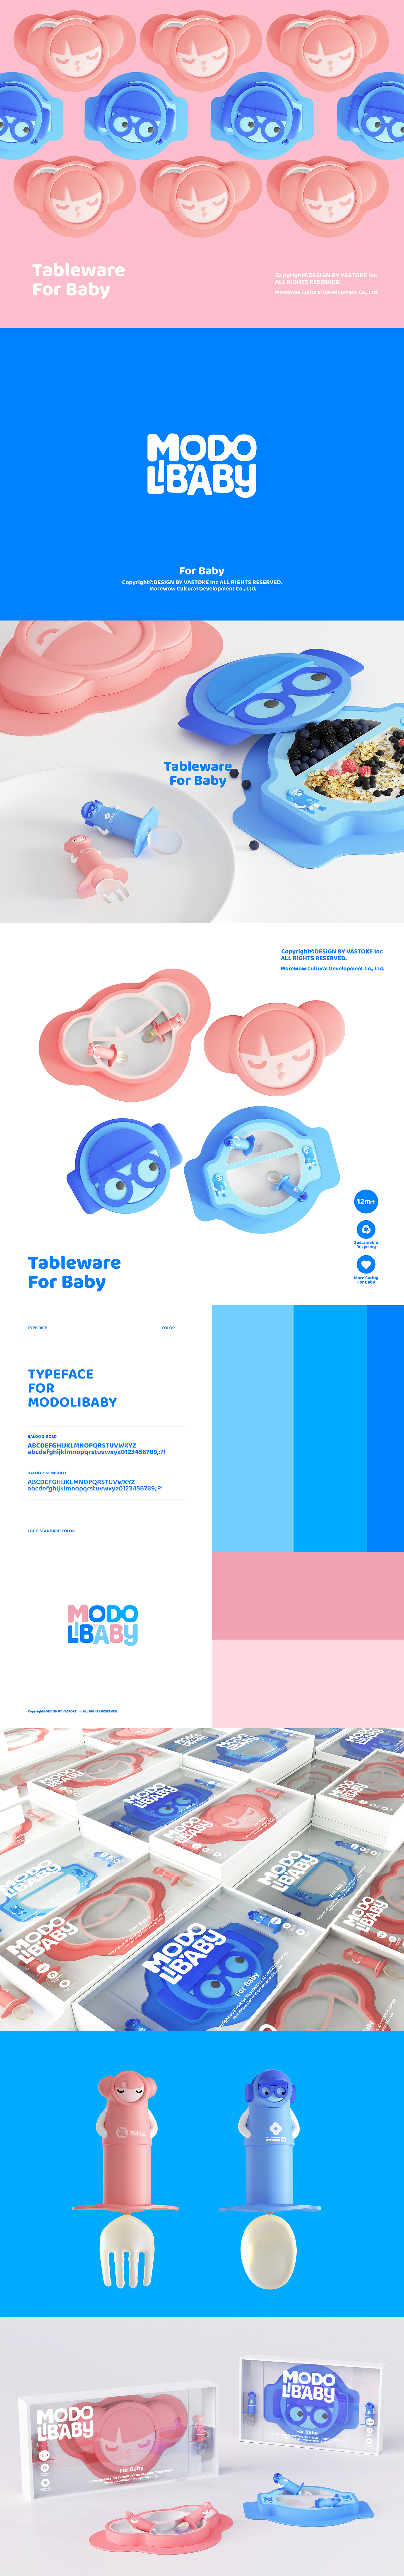 玩型填空 | MODOLI家族嬰童類概念設計